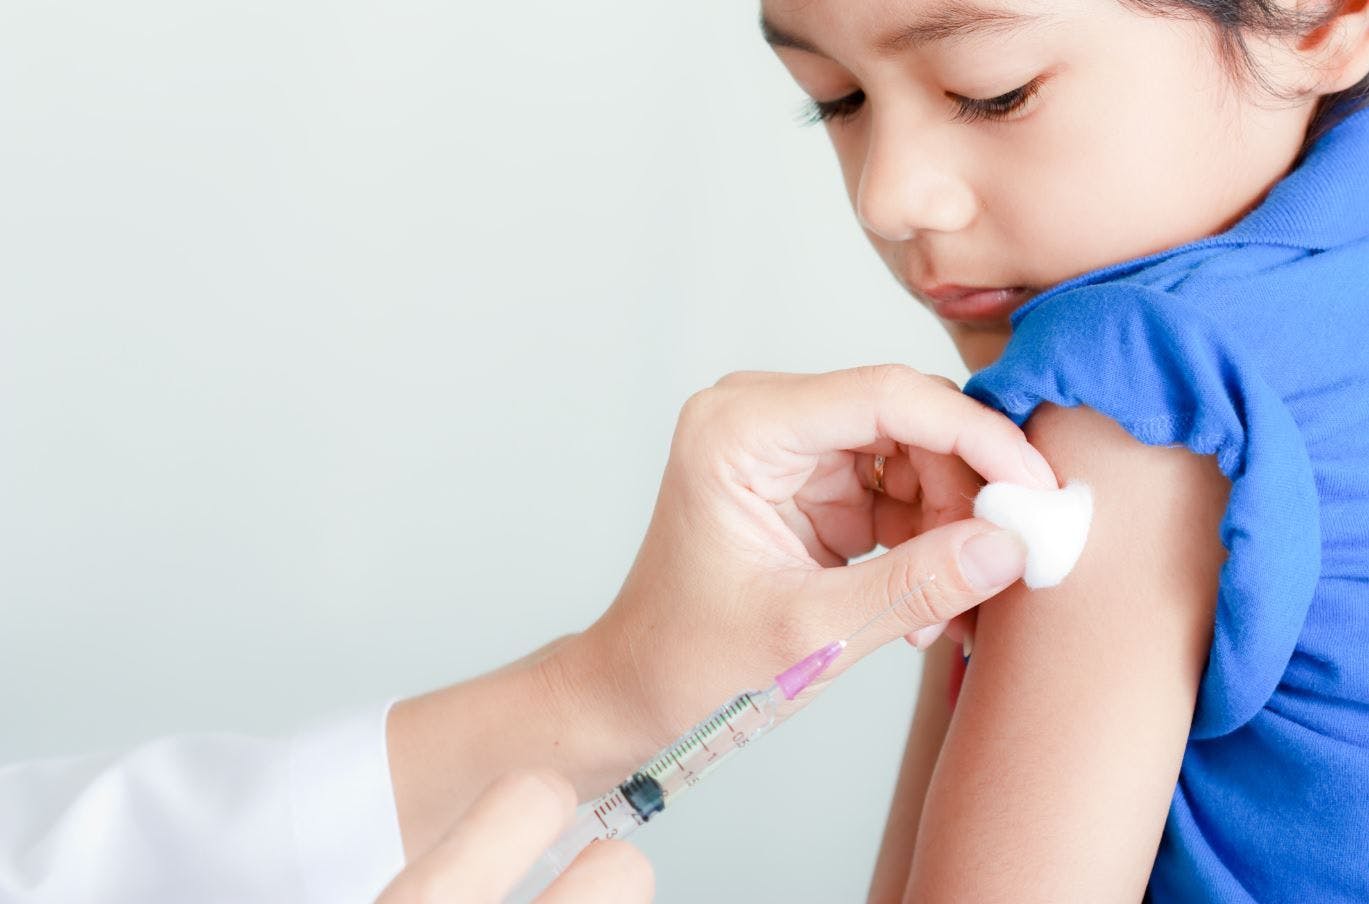 Pfizer vaccine efficacy wanes in children after 3 months 